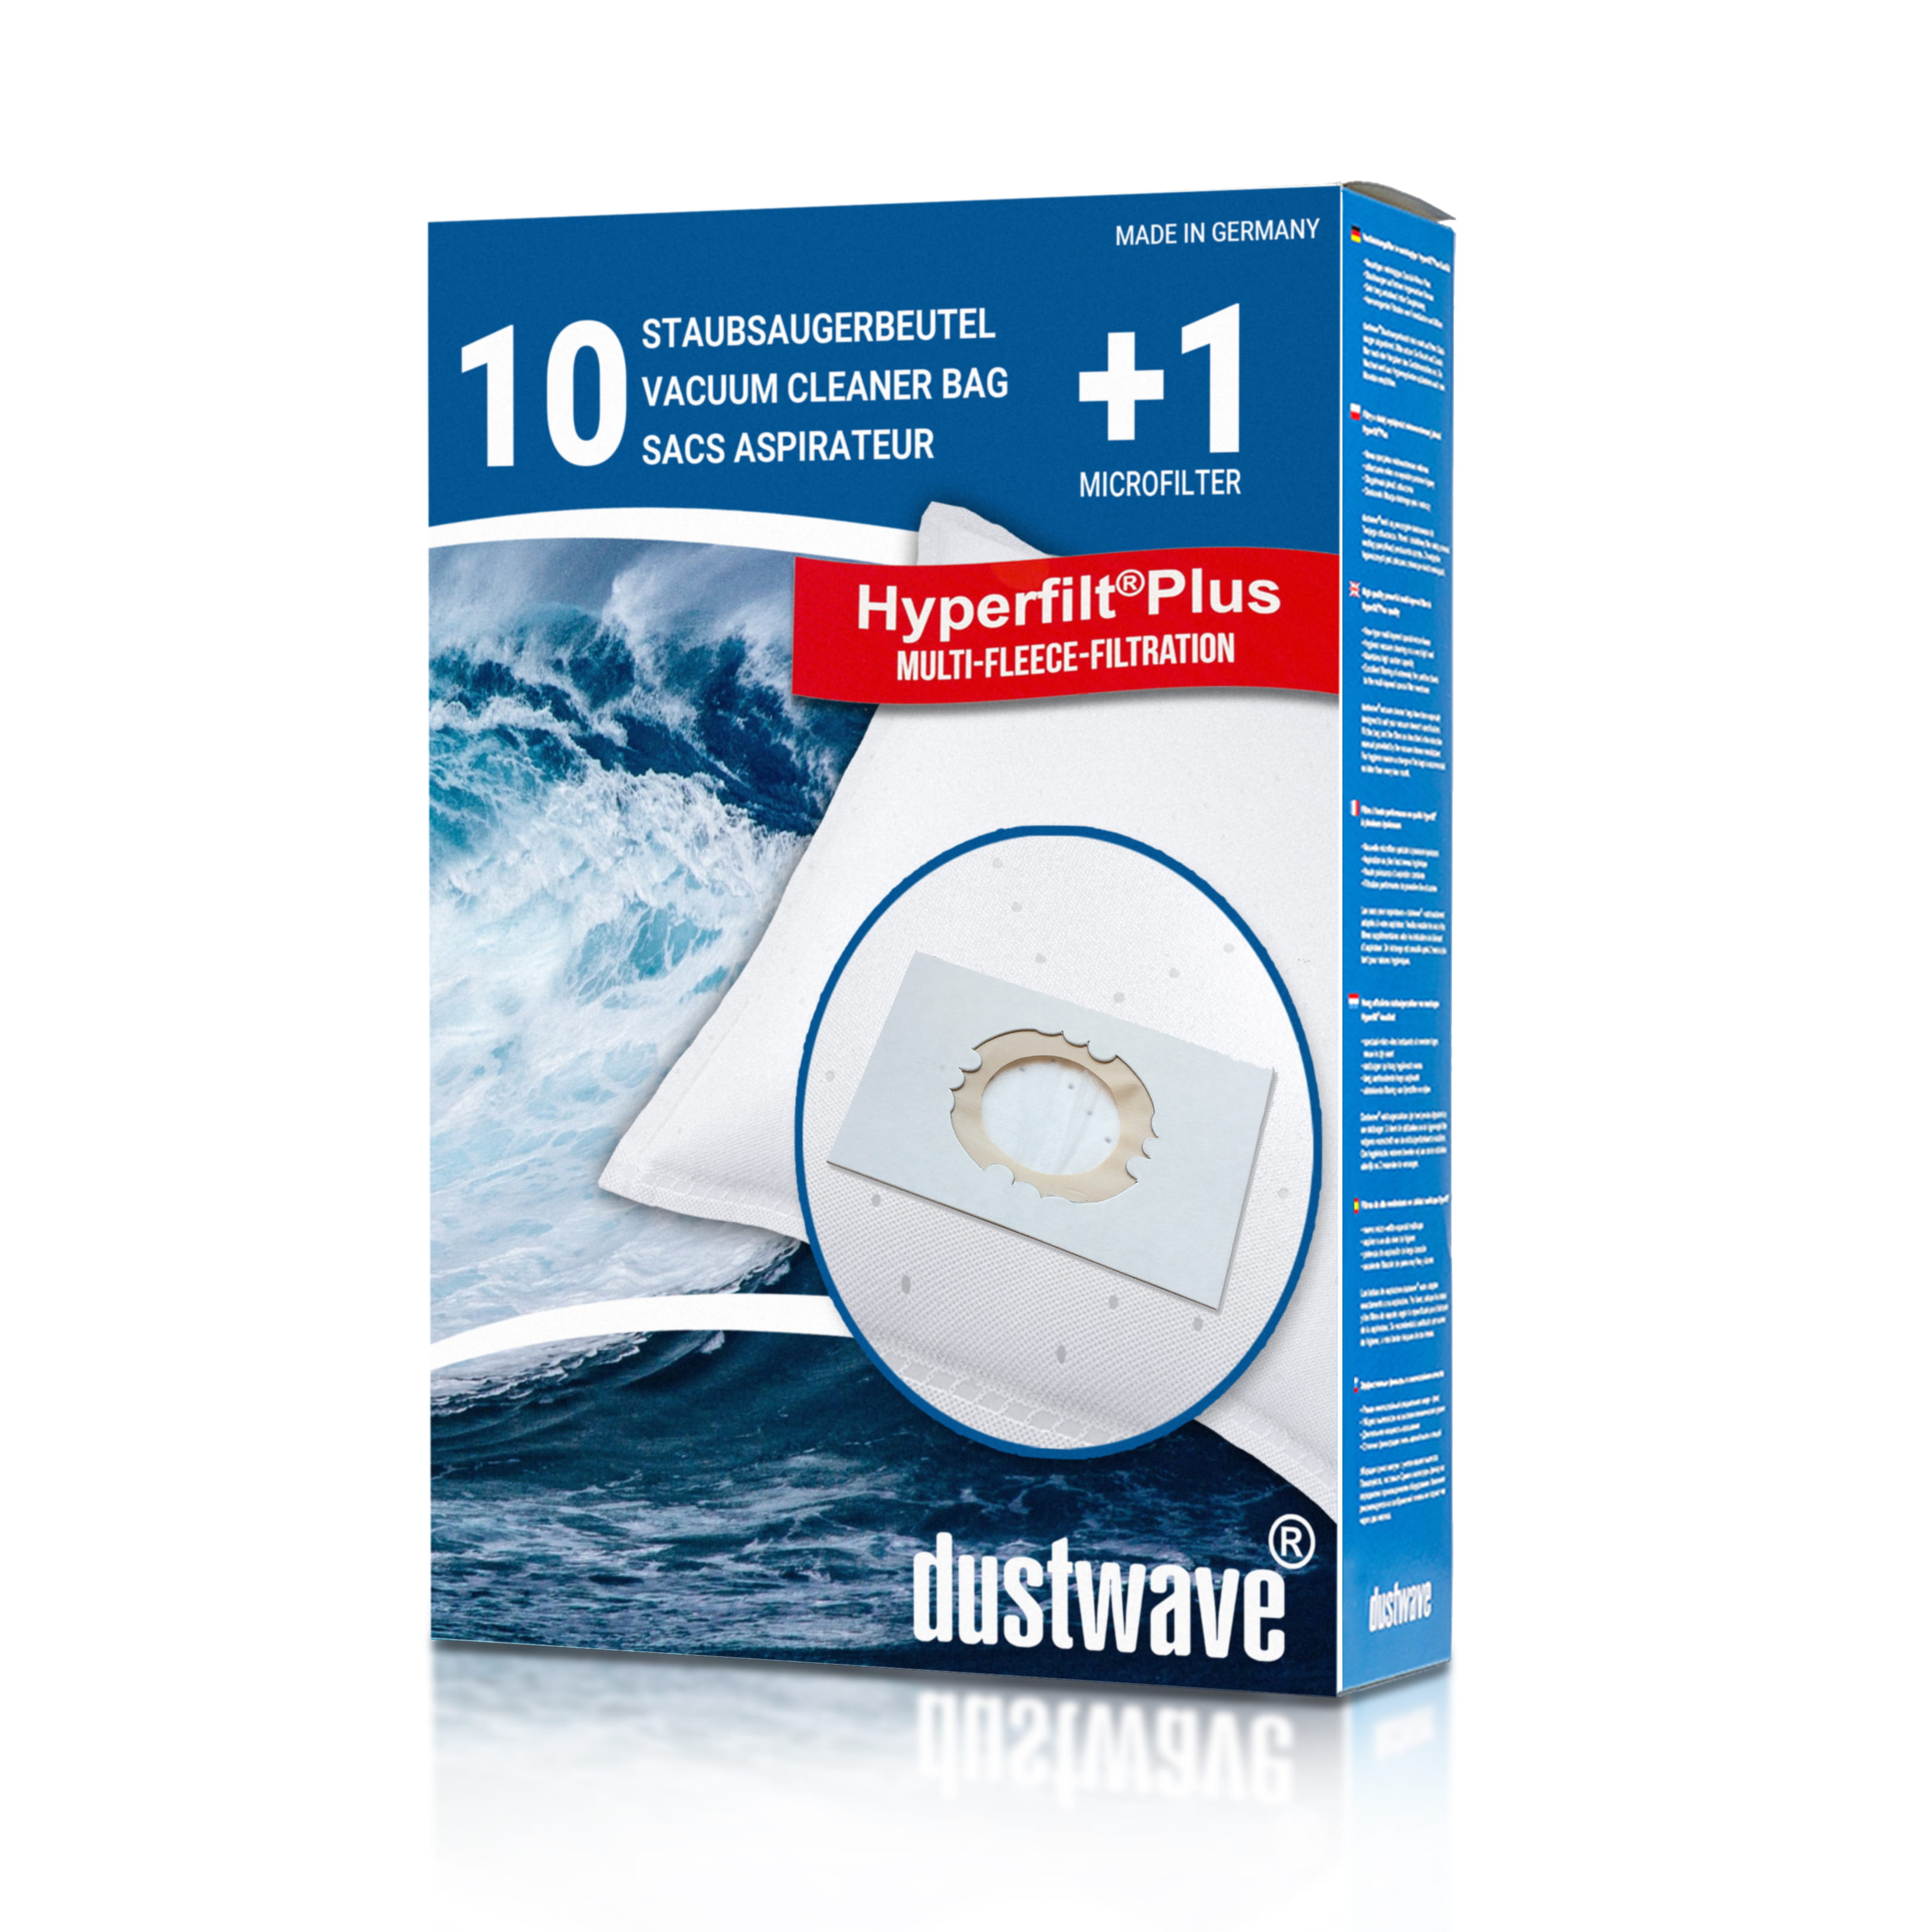 Dustwave® 10 Staubsaugerbeutel für Hoover BD SX6254 011 Jet N Wash - hocheffizient, mehrlagiges Mikrovlies mit Hygieneverschluss - Made in Germany